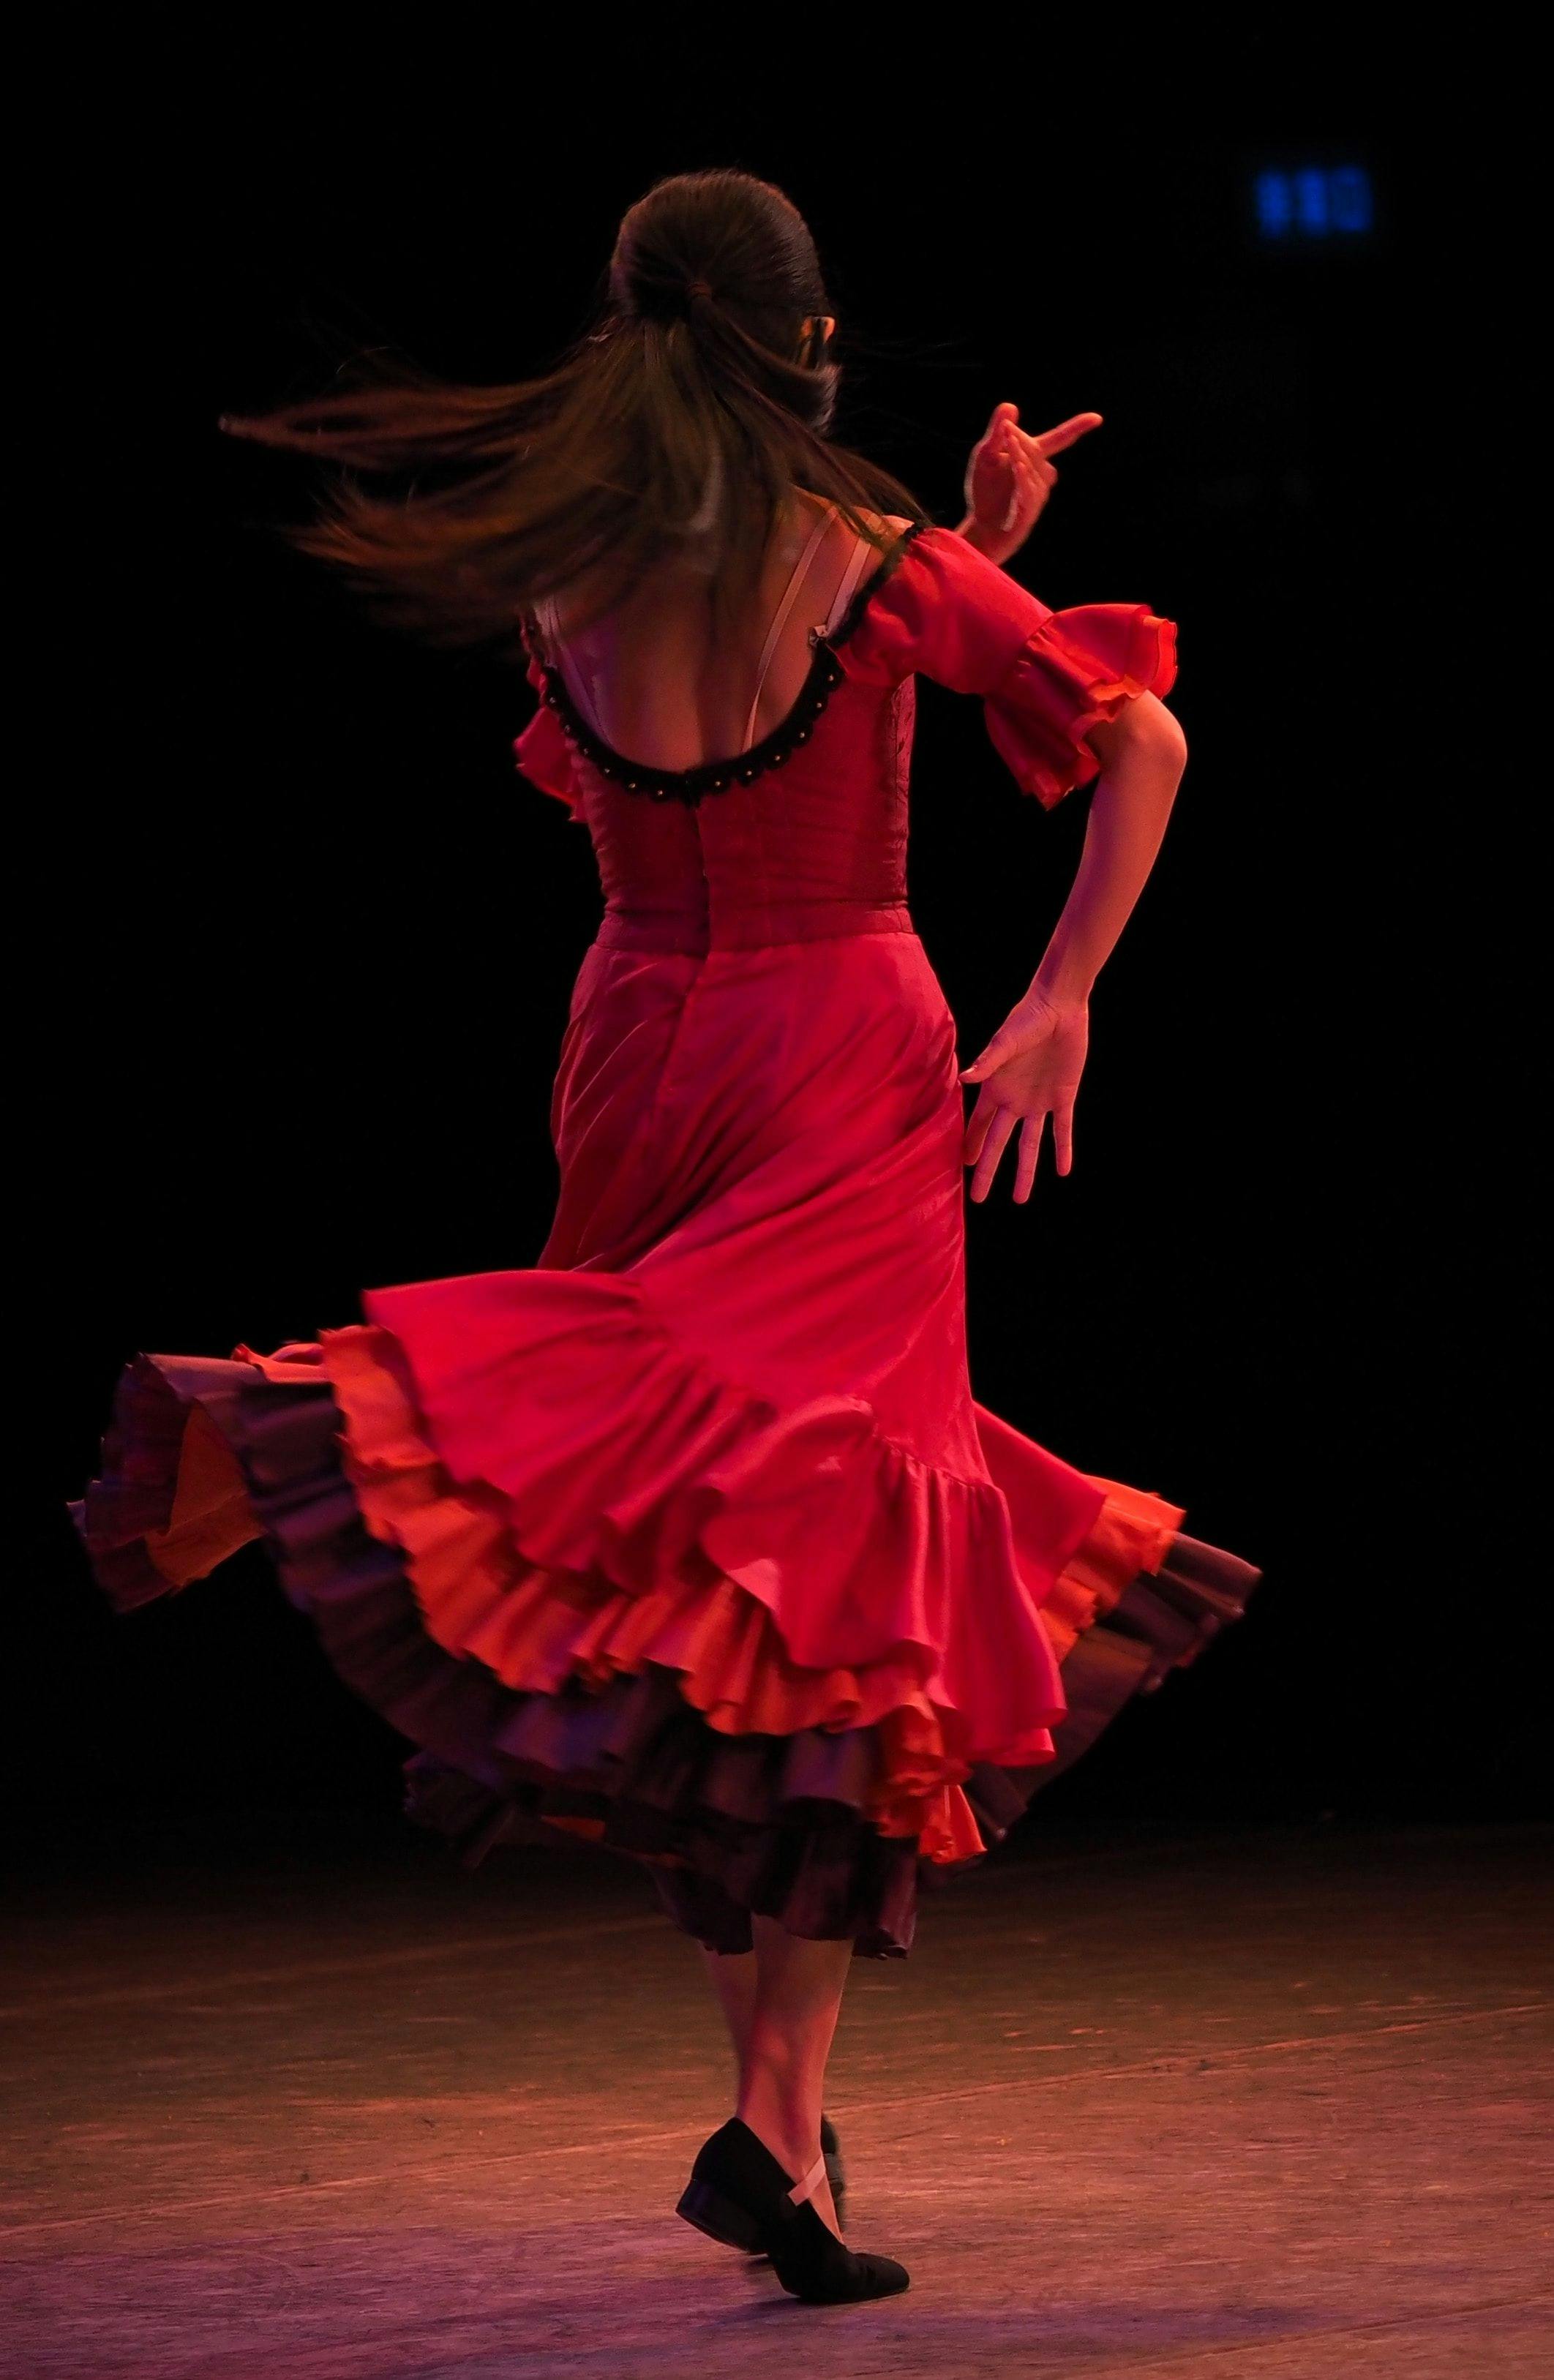 Woman wearing red dress dancing flamenco.